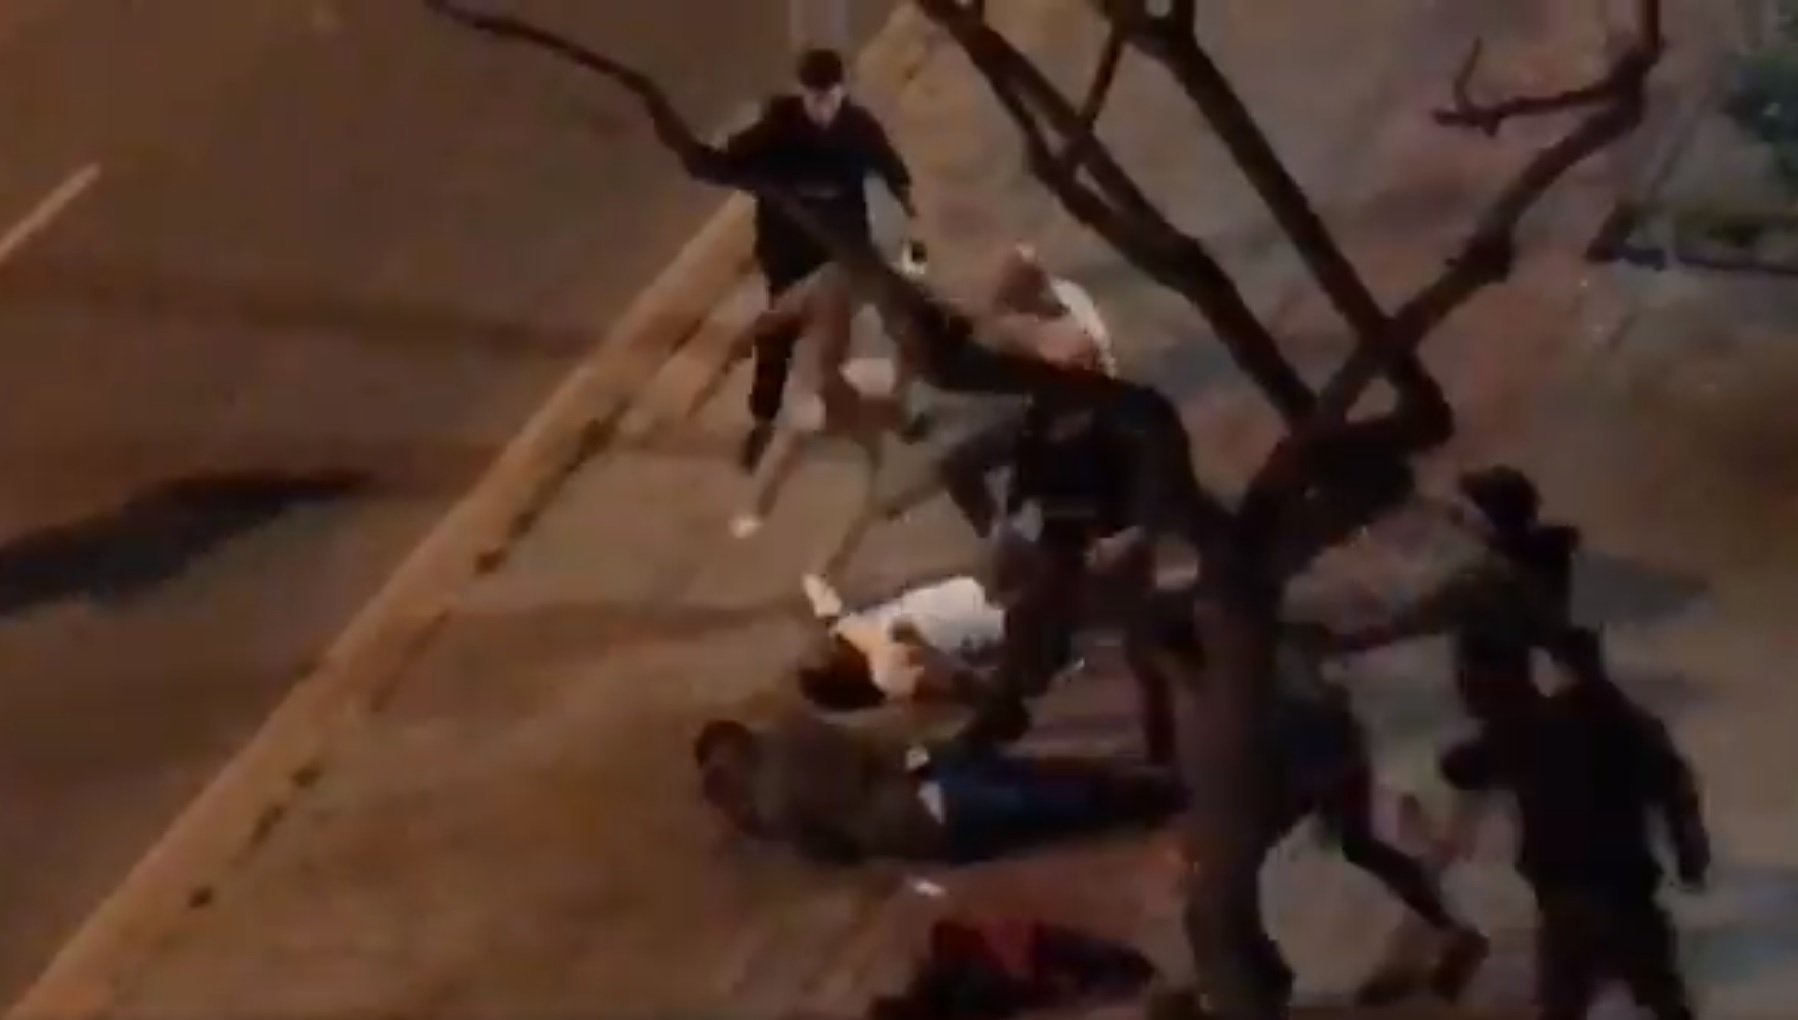 Tres heridos graves en una pelea multitudinaria en Cornellà